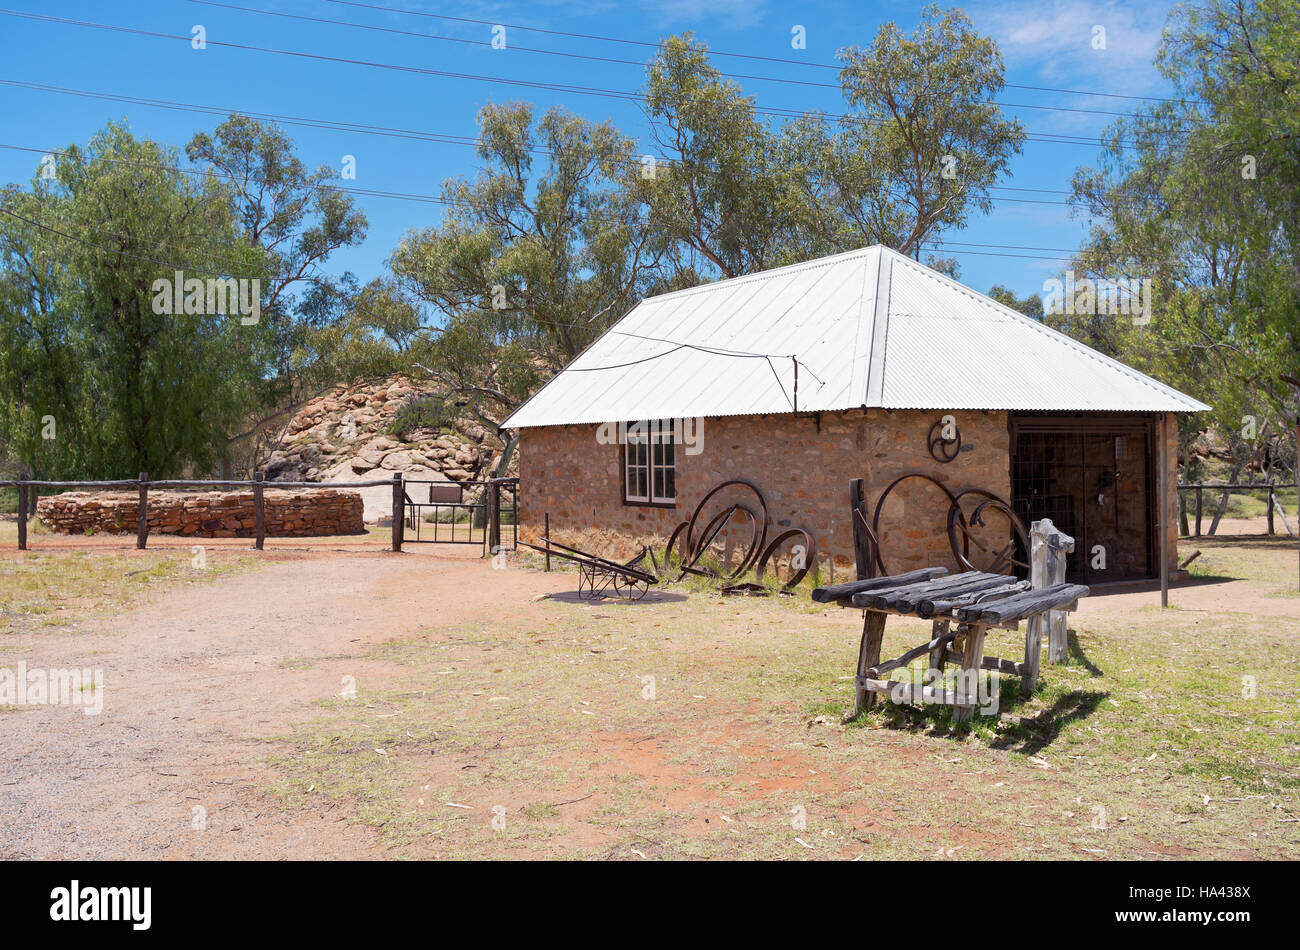 historische Telegrafenstation zu reservieren, Gebäude und Hof in Alice Springs Nordterritorium Australiens Hufbeschlag Stockfoto